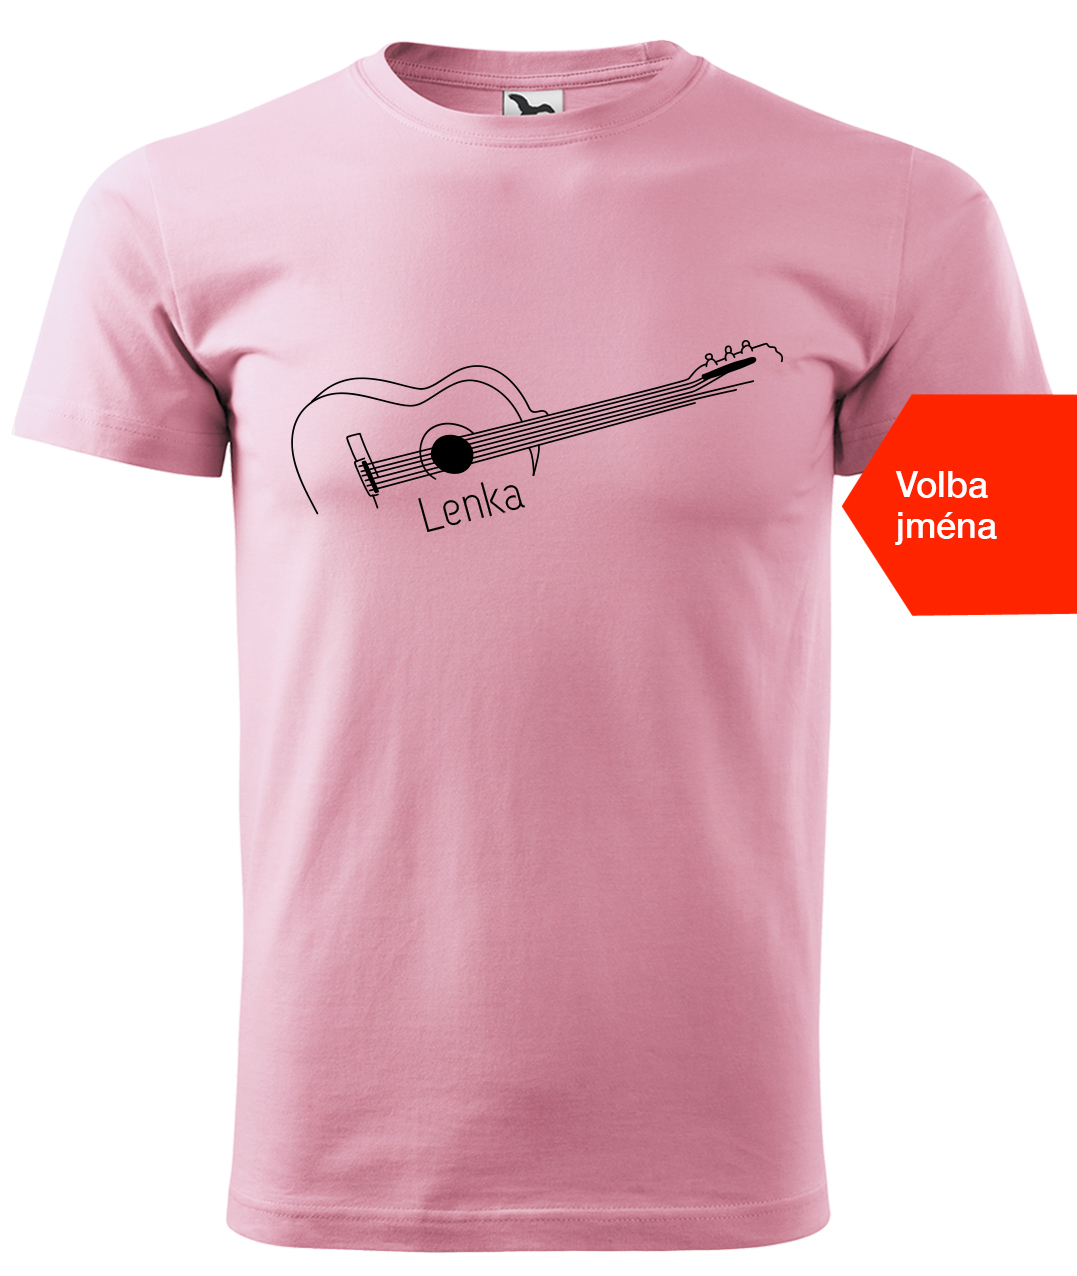 Dětské tričko s kytarou se jménem - Stylizovaná kytara Velikost: 4 roky / 110 cm, Barva: Růžová (30), Délka rukávu: Krátký rukáv